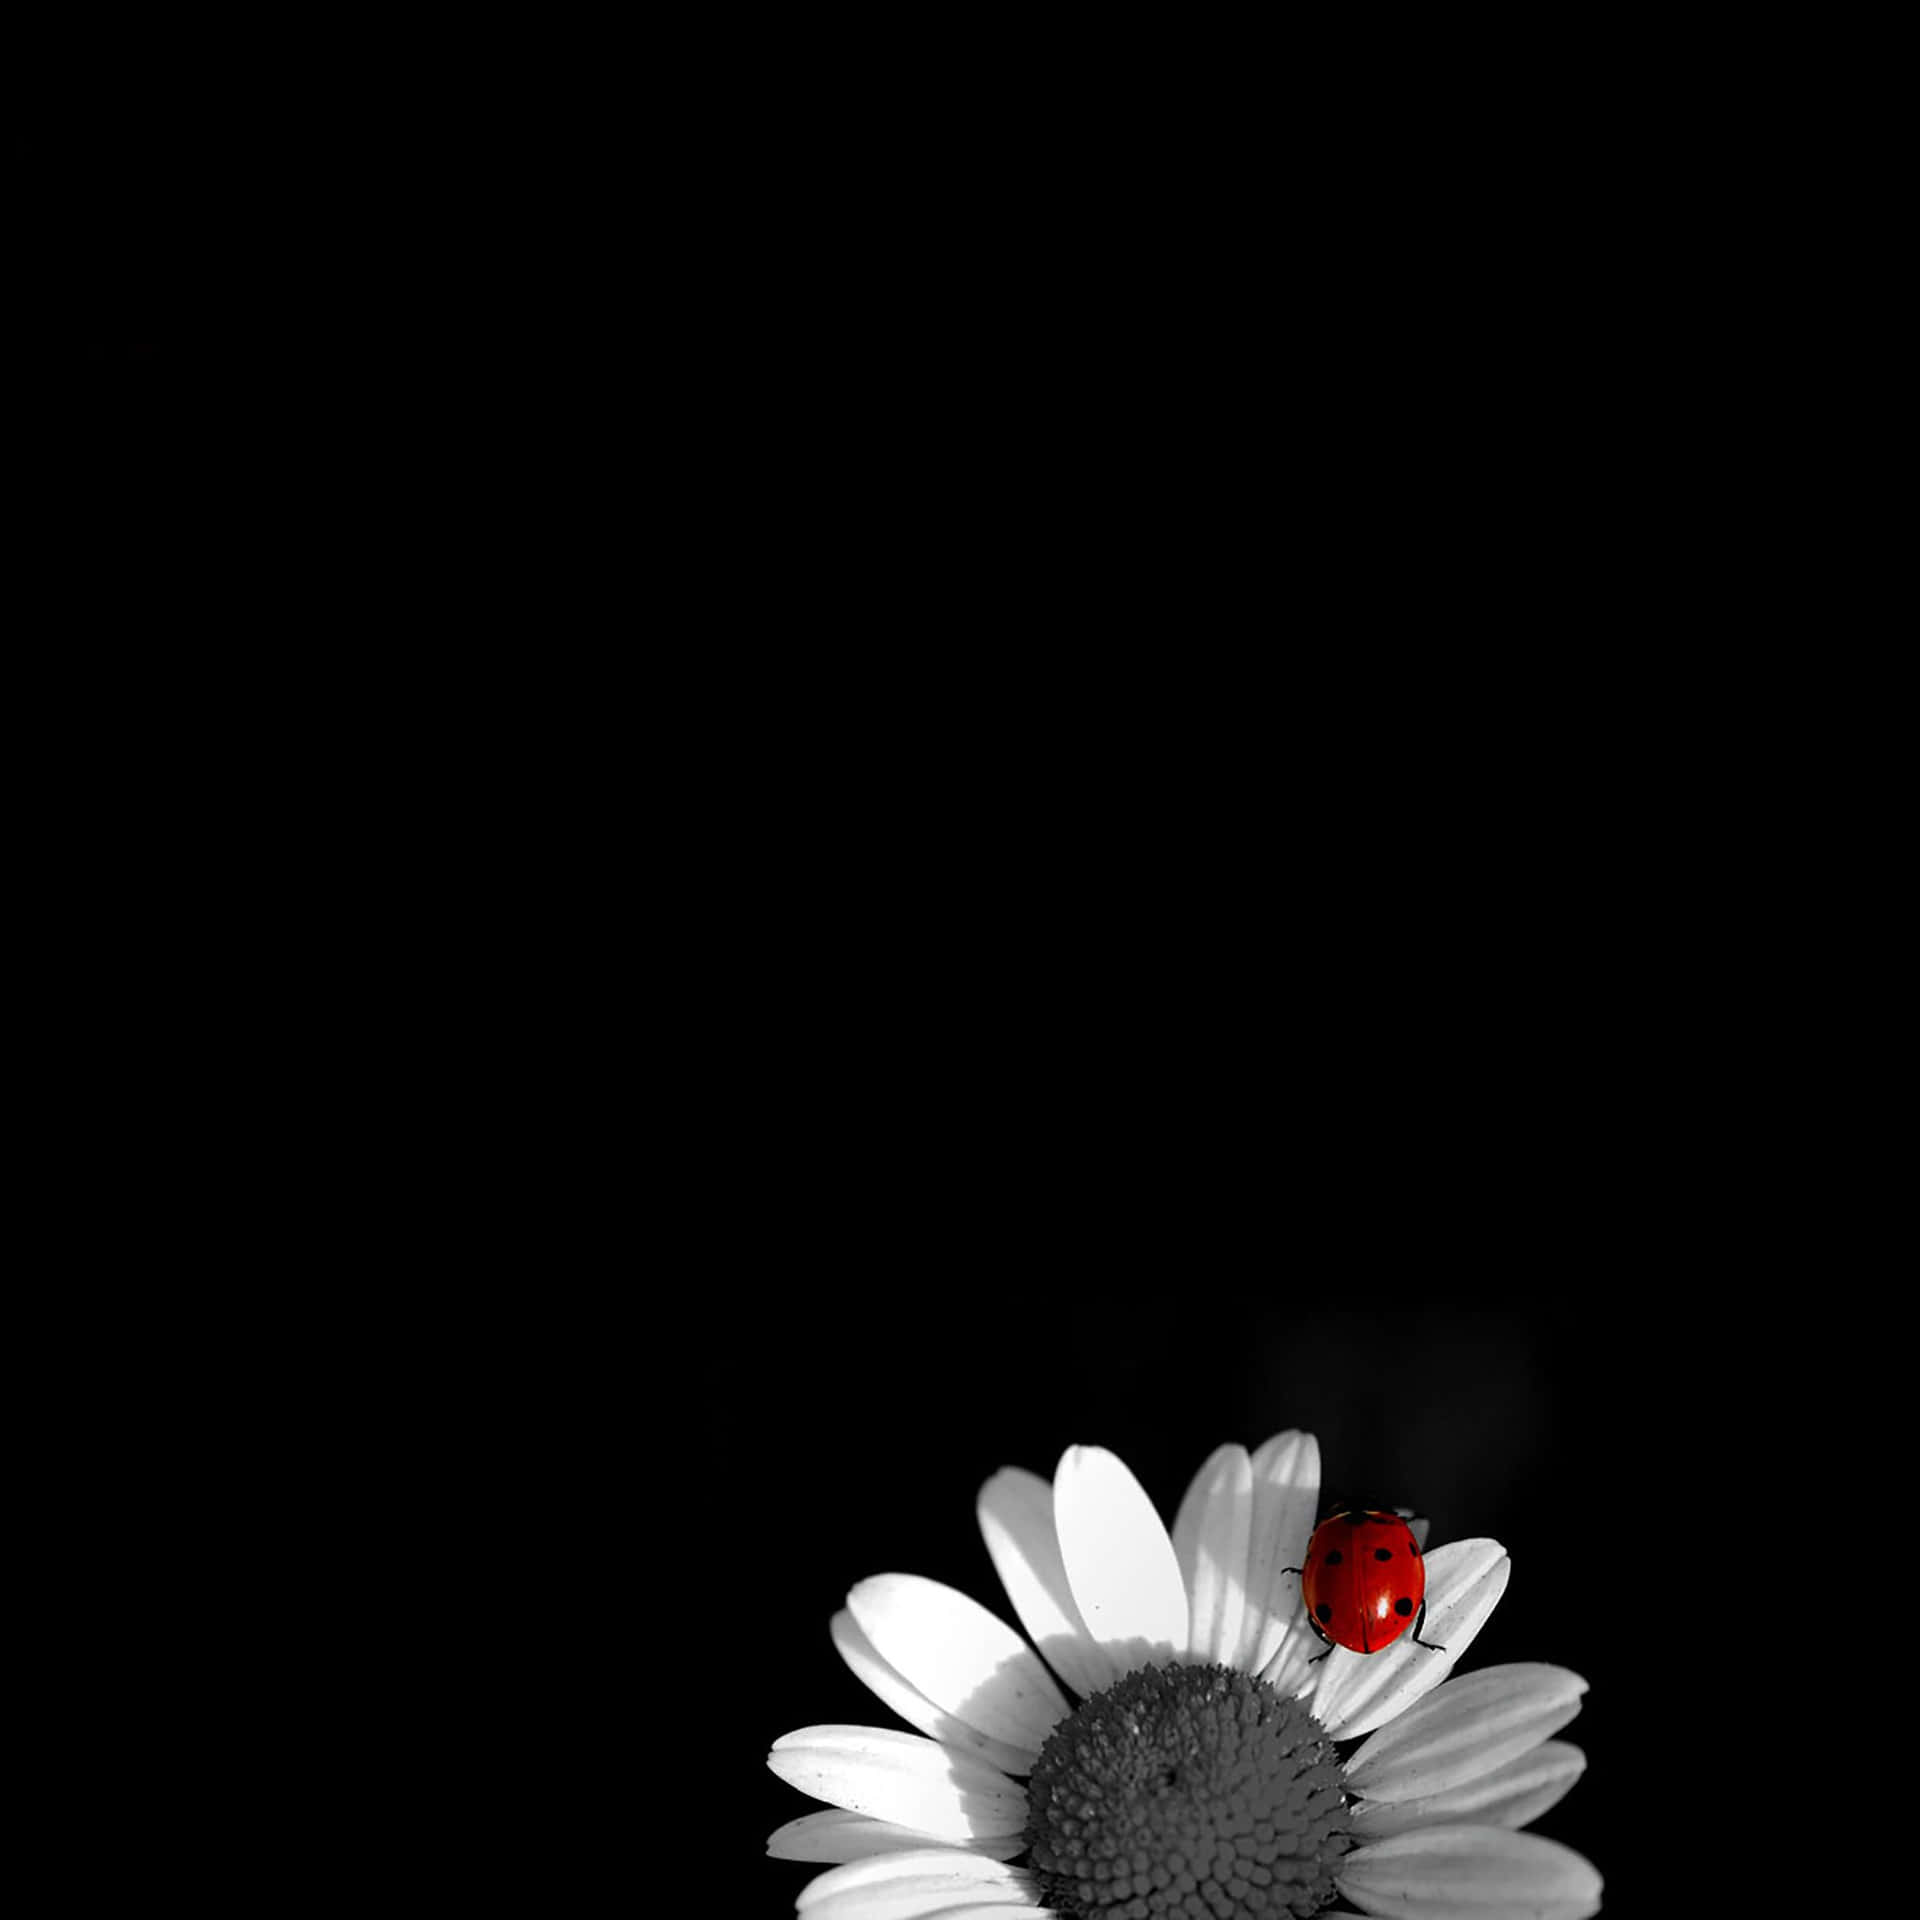 Black Ipad With Ladybug On Flower Background